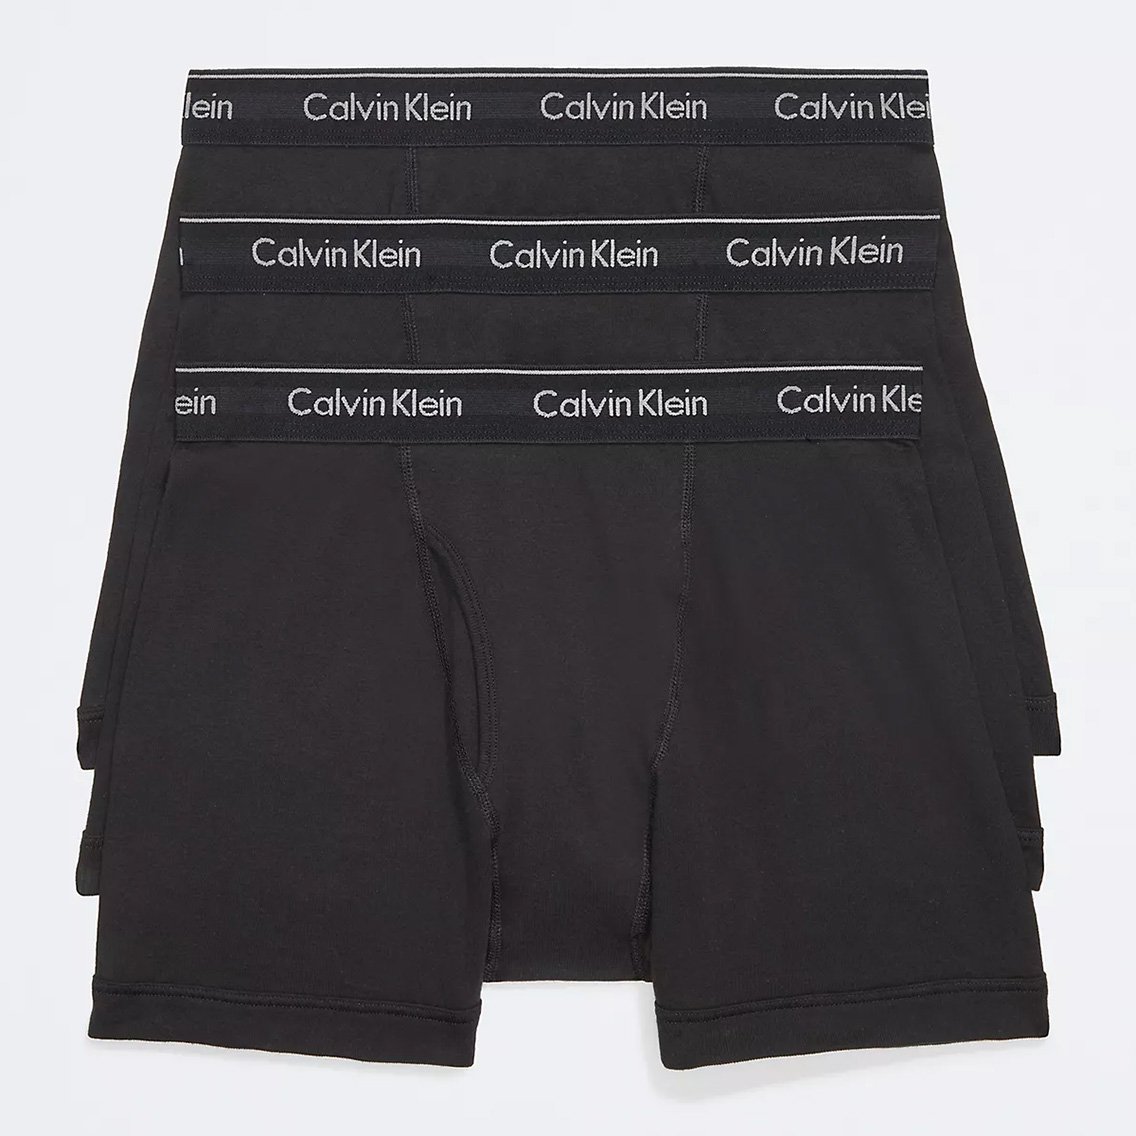 Calvin Klein(カルバンクライン)[NB4003-001]:ボクサーパンツ,男性下着,インナーの通販